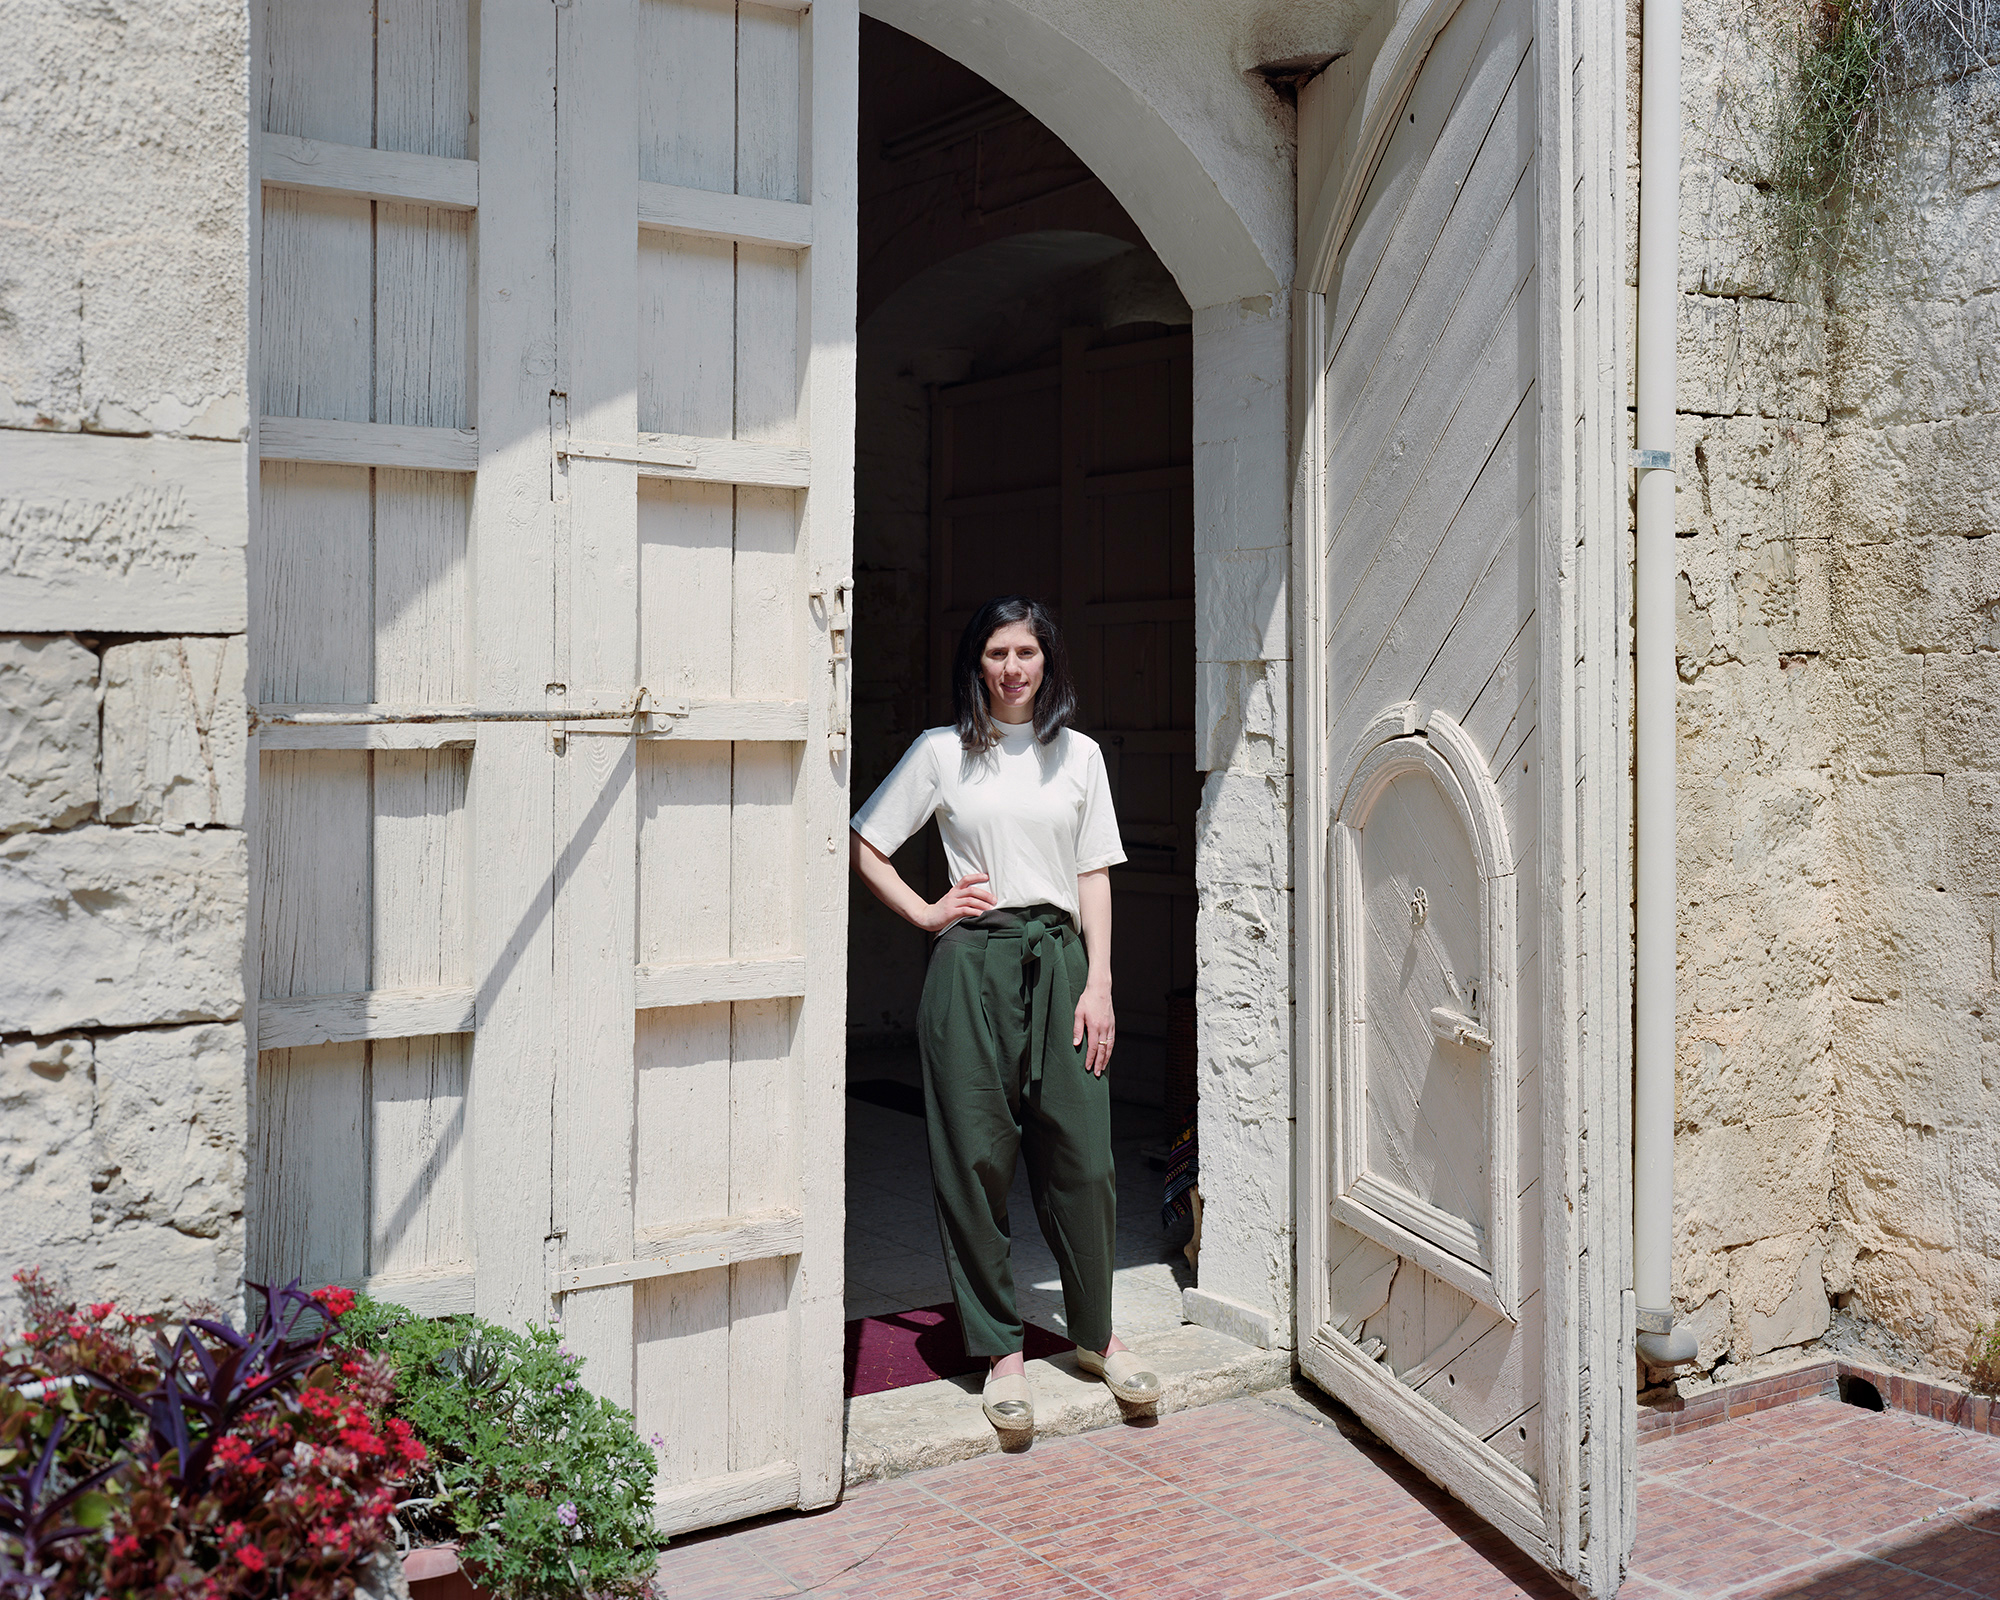 Young woman standing in big, old doorway